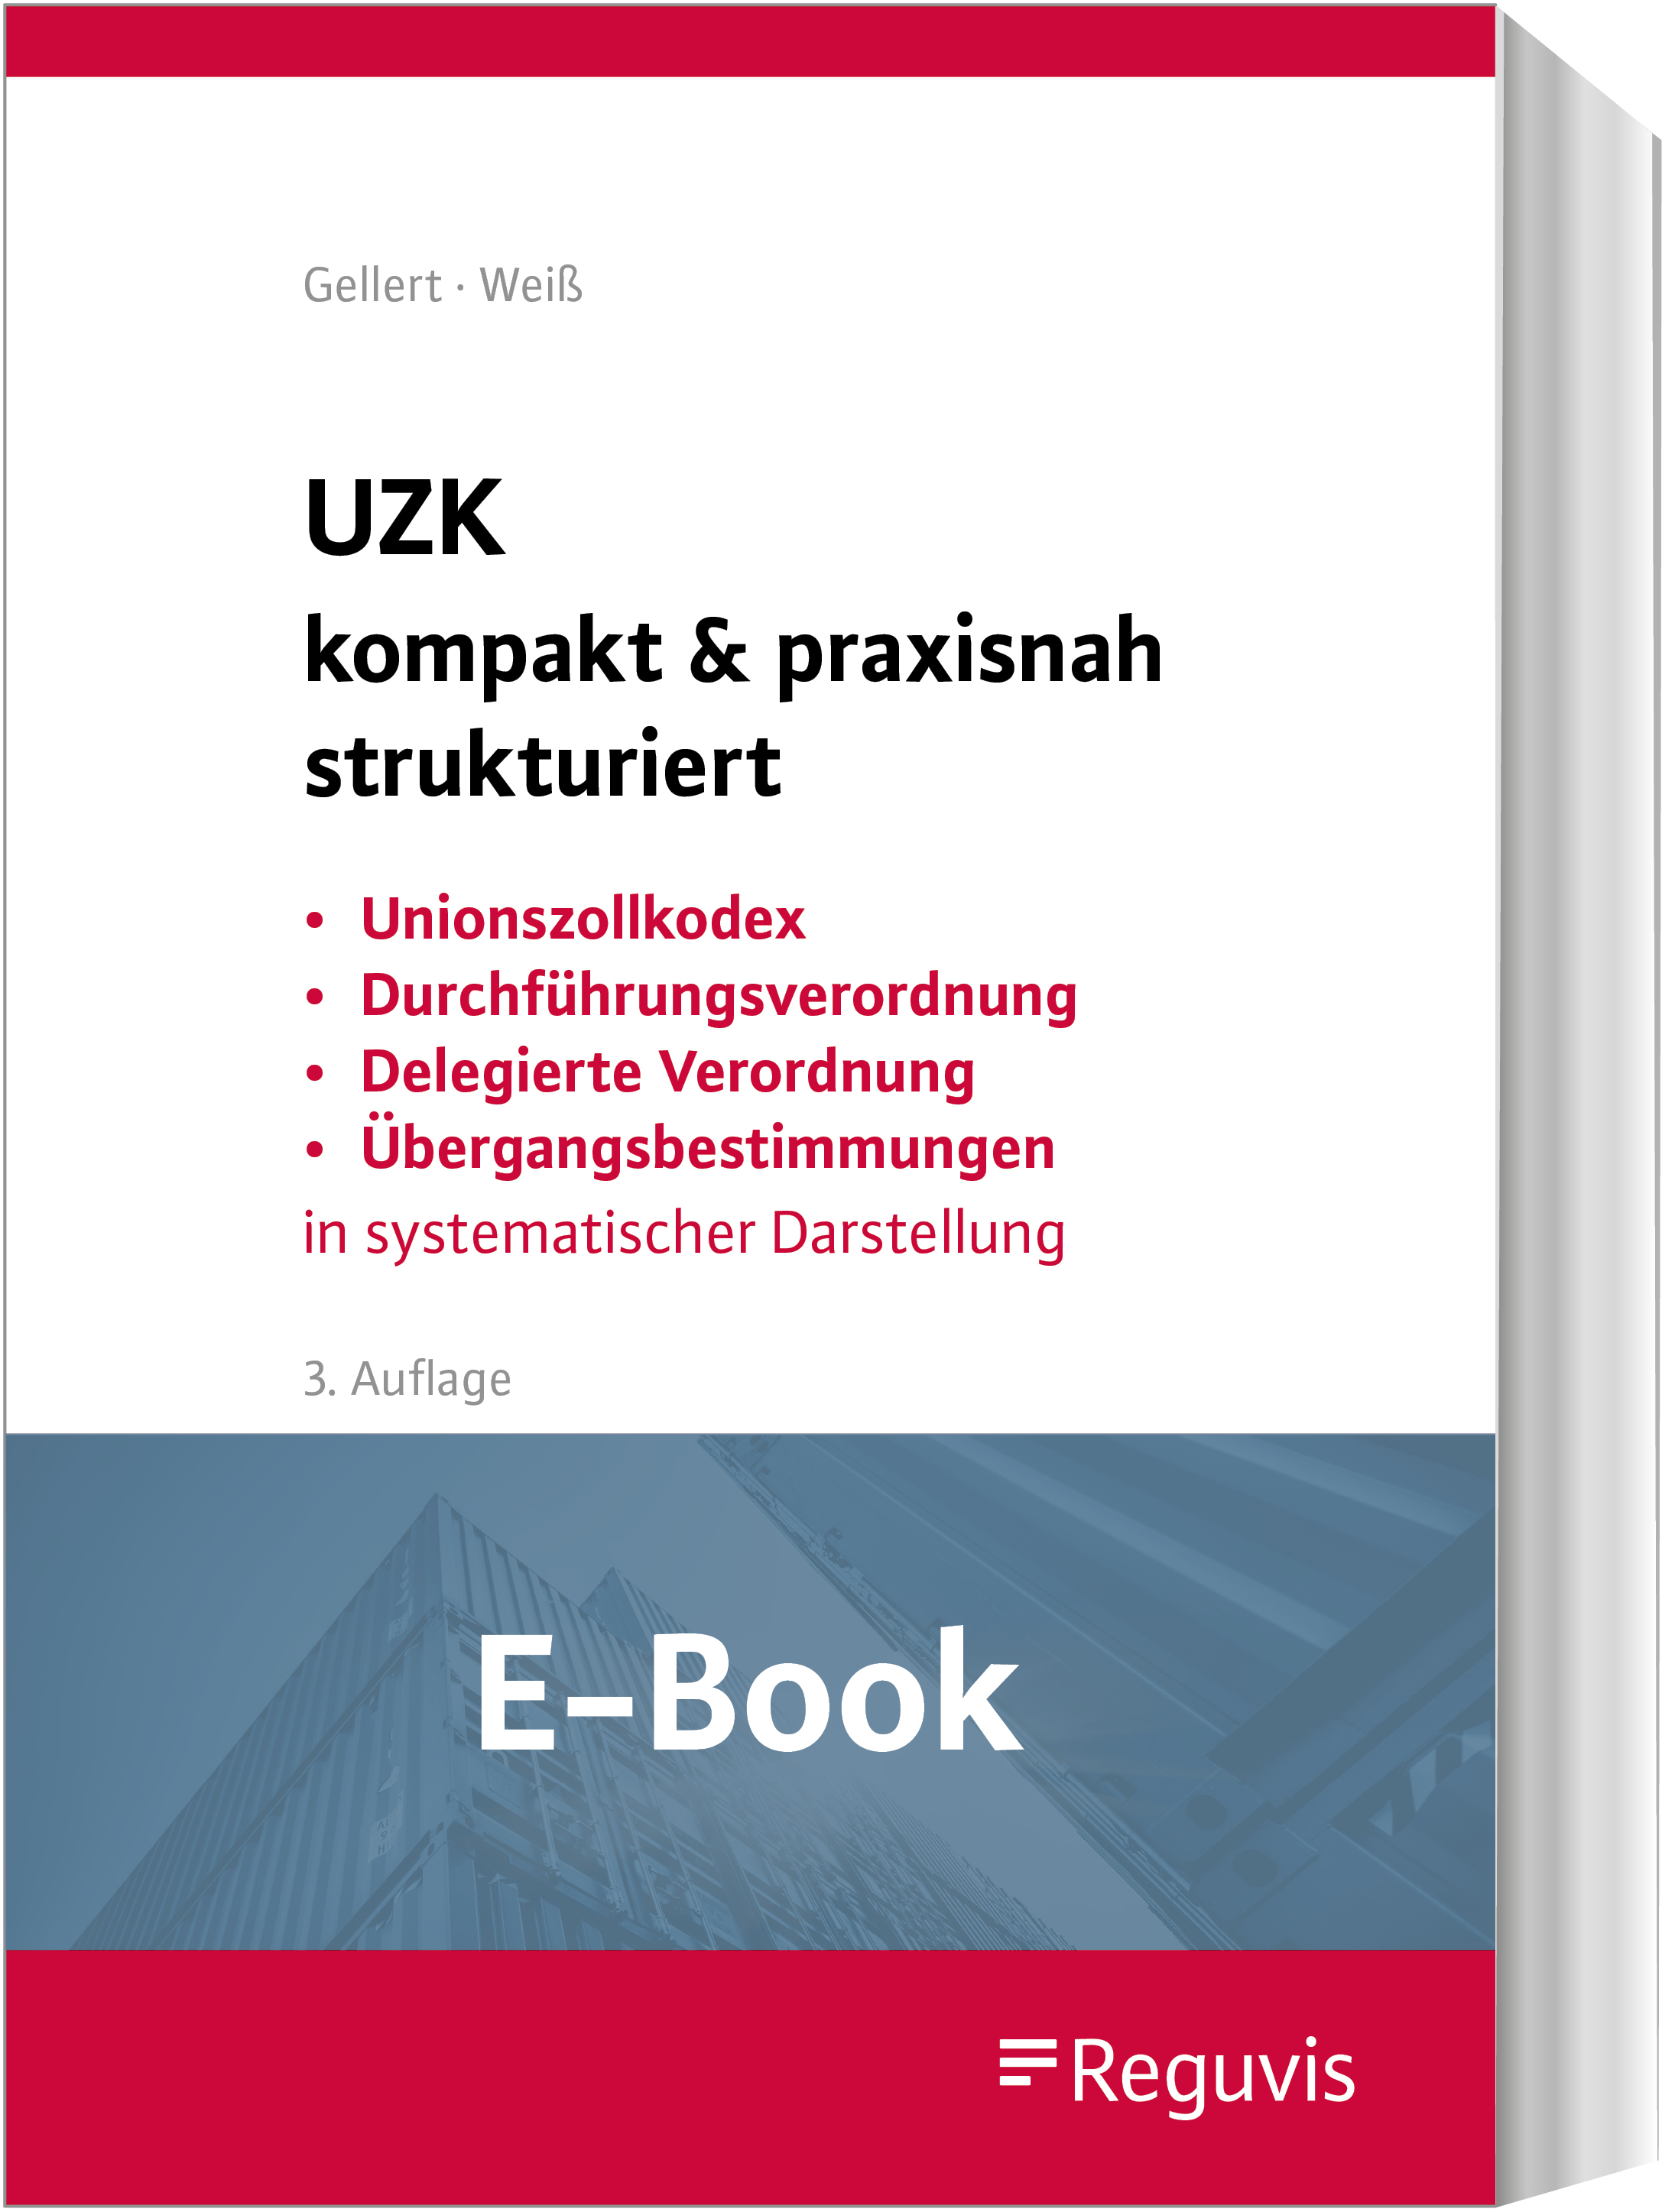 Gellert/Weiß; UZK kompakt & praxisnah strukturiert E-Book